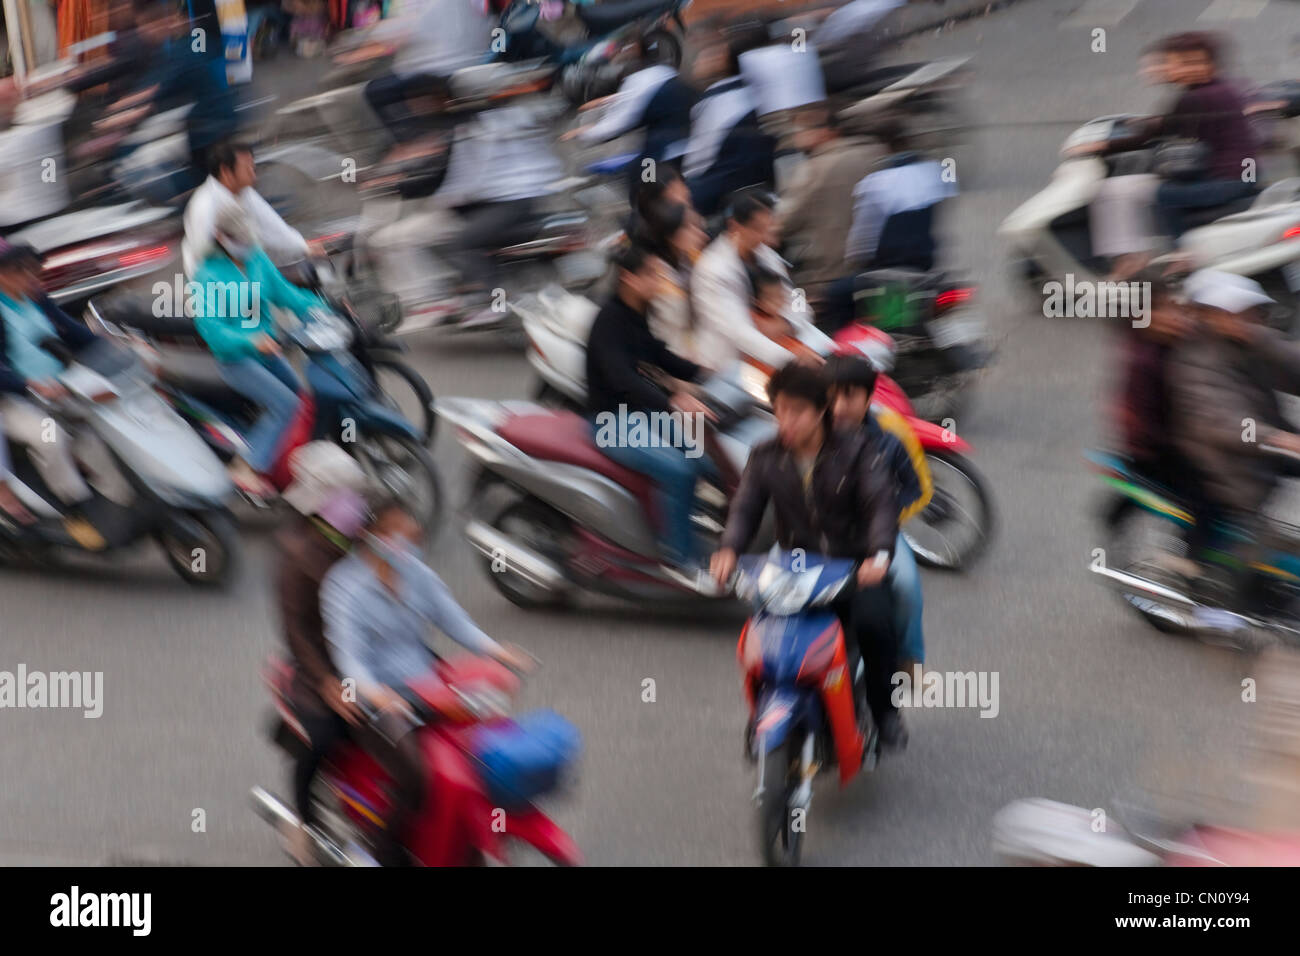 Motorbikes on the street, Hanoi, Vietnam Stock Photo